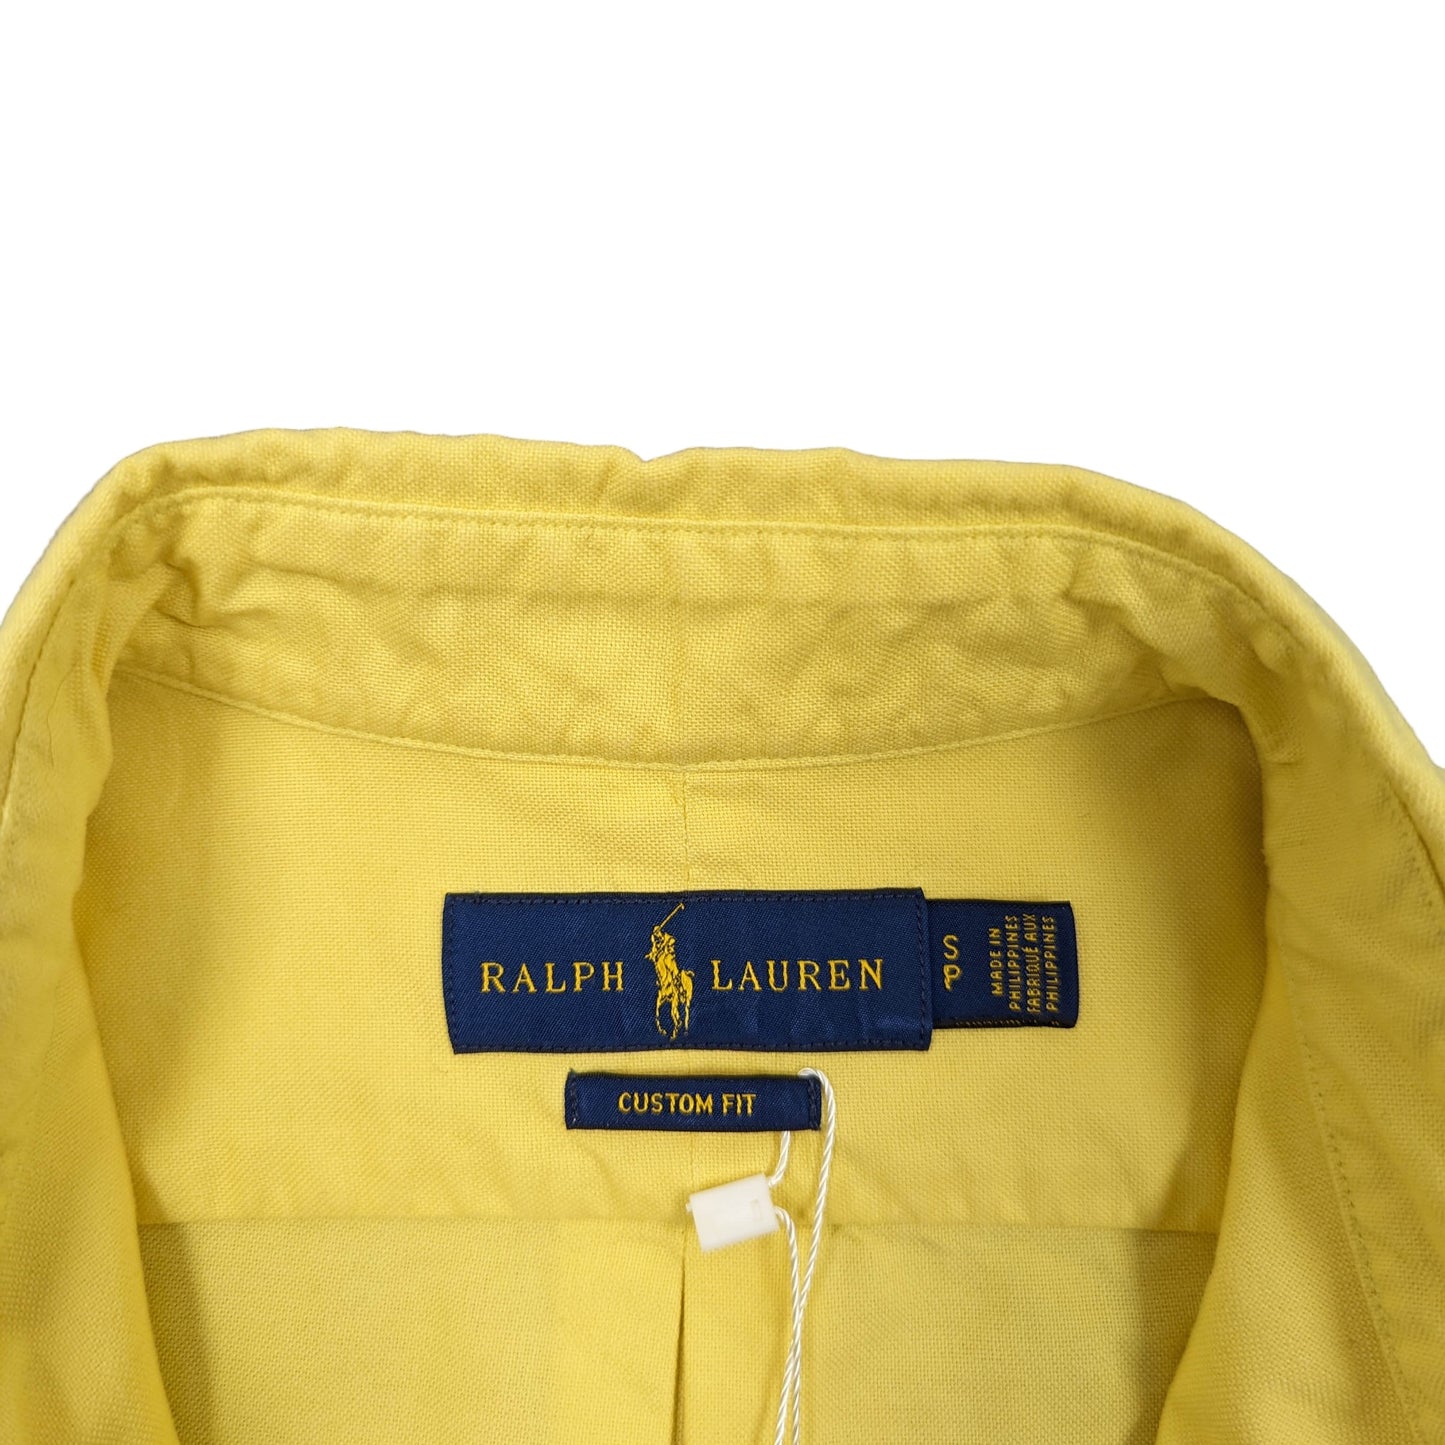 Ralph Lauren Custom Fit Shirt Size S